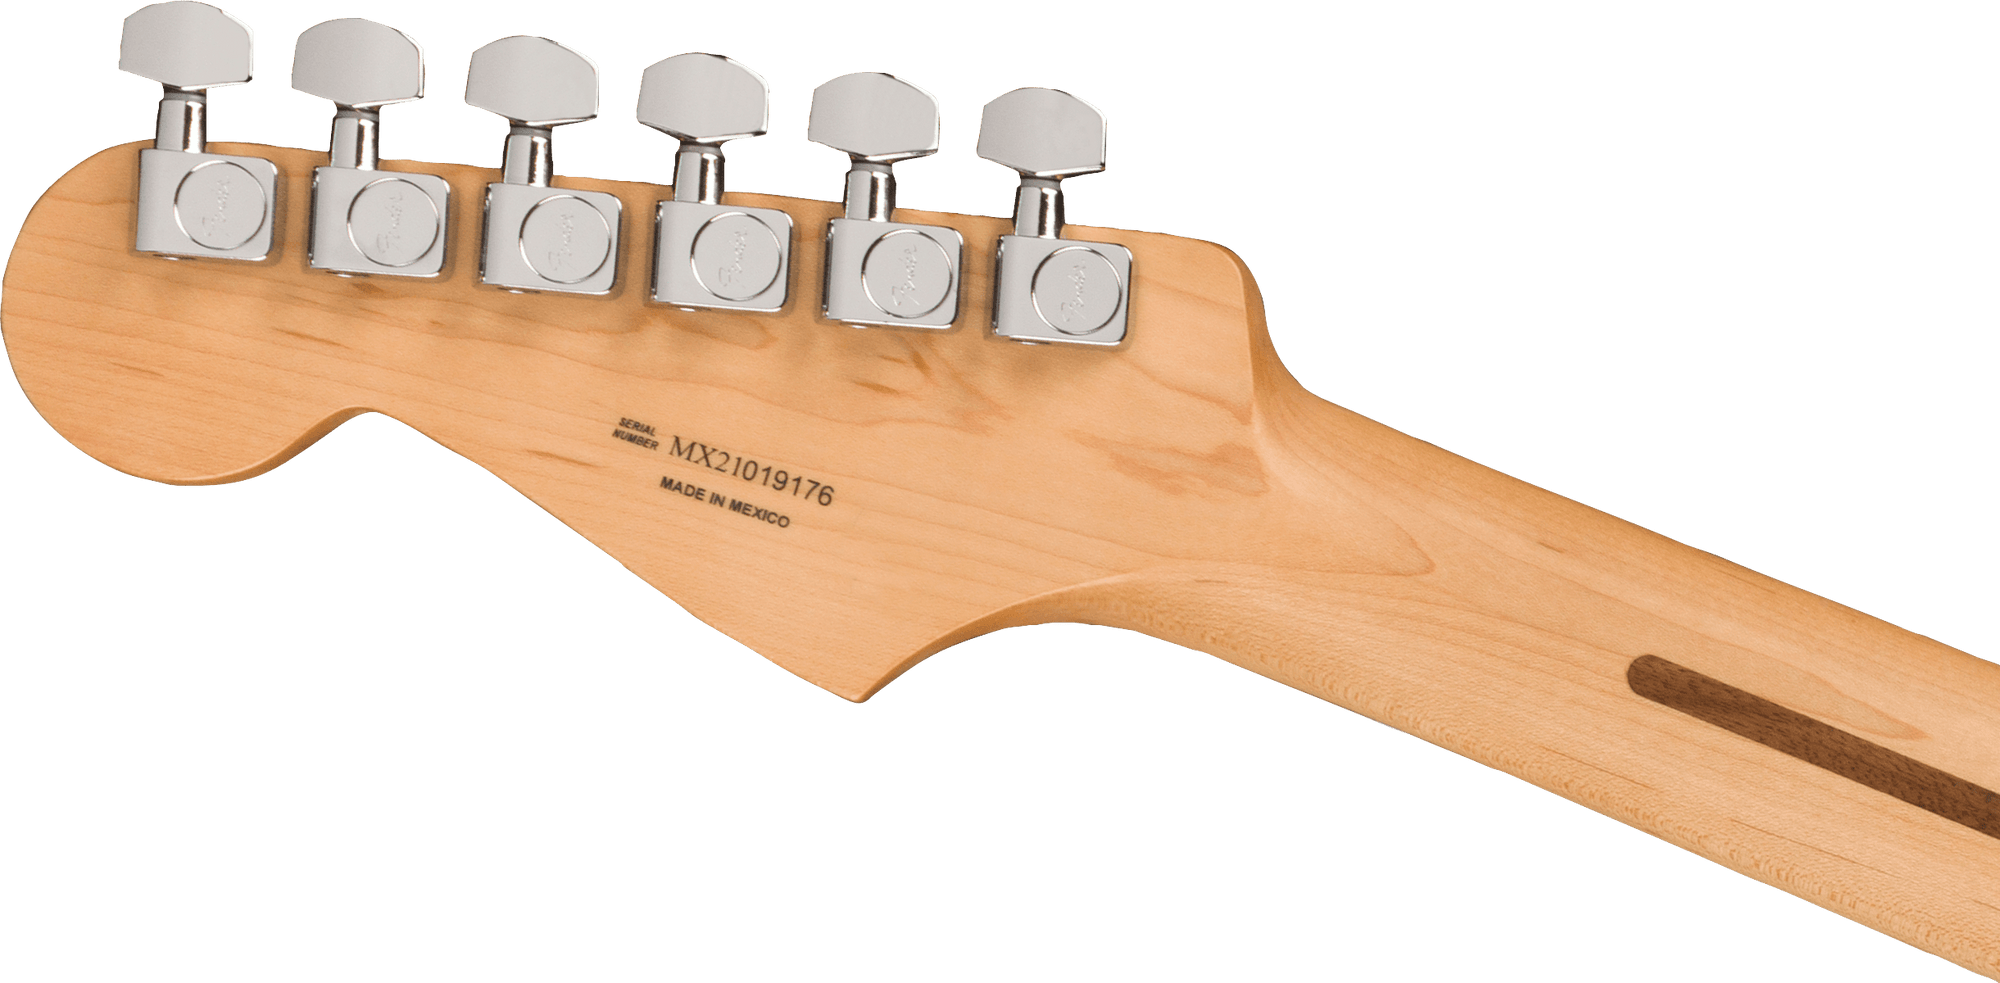 30th Anniversary Screamadelica Stratocaster, Pau Ferro Fingerboard, Custom Graphic